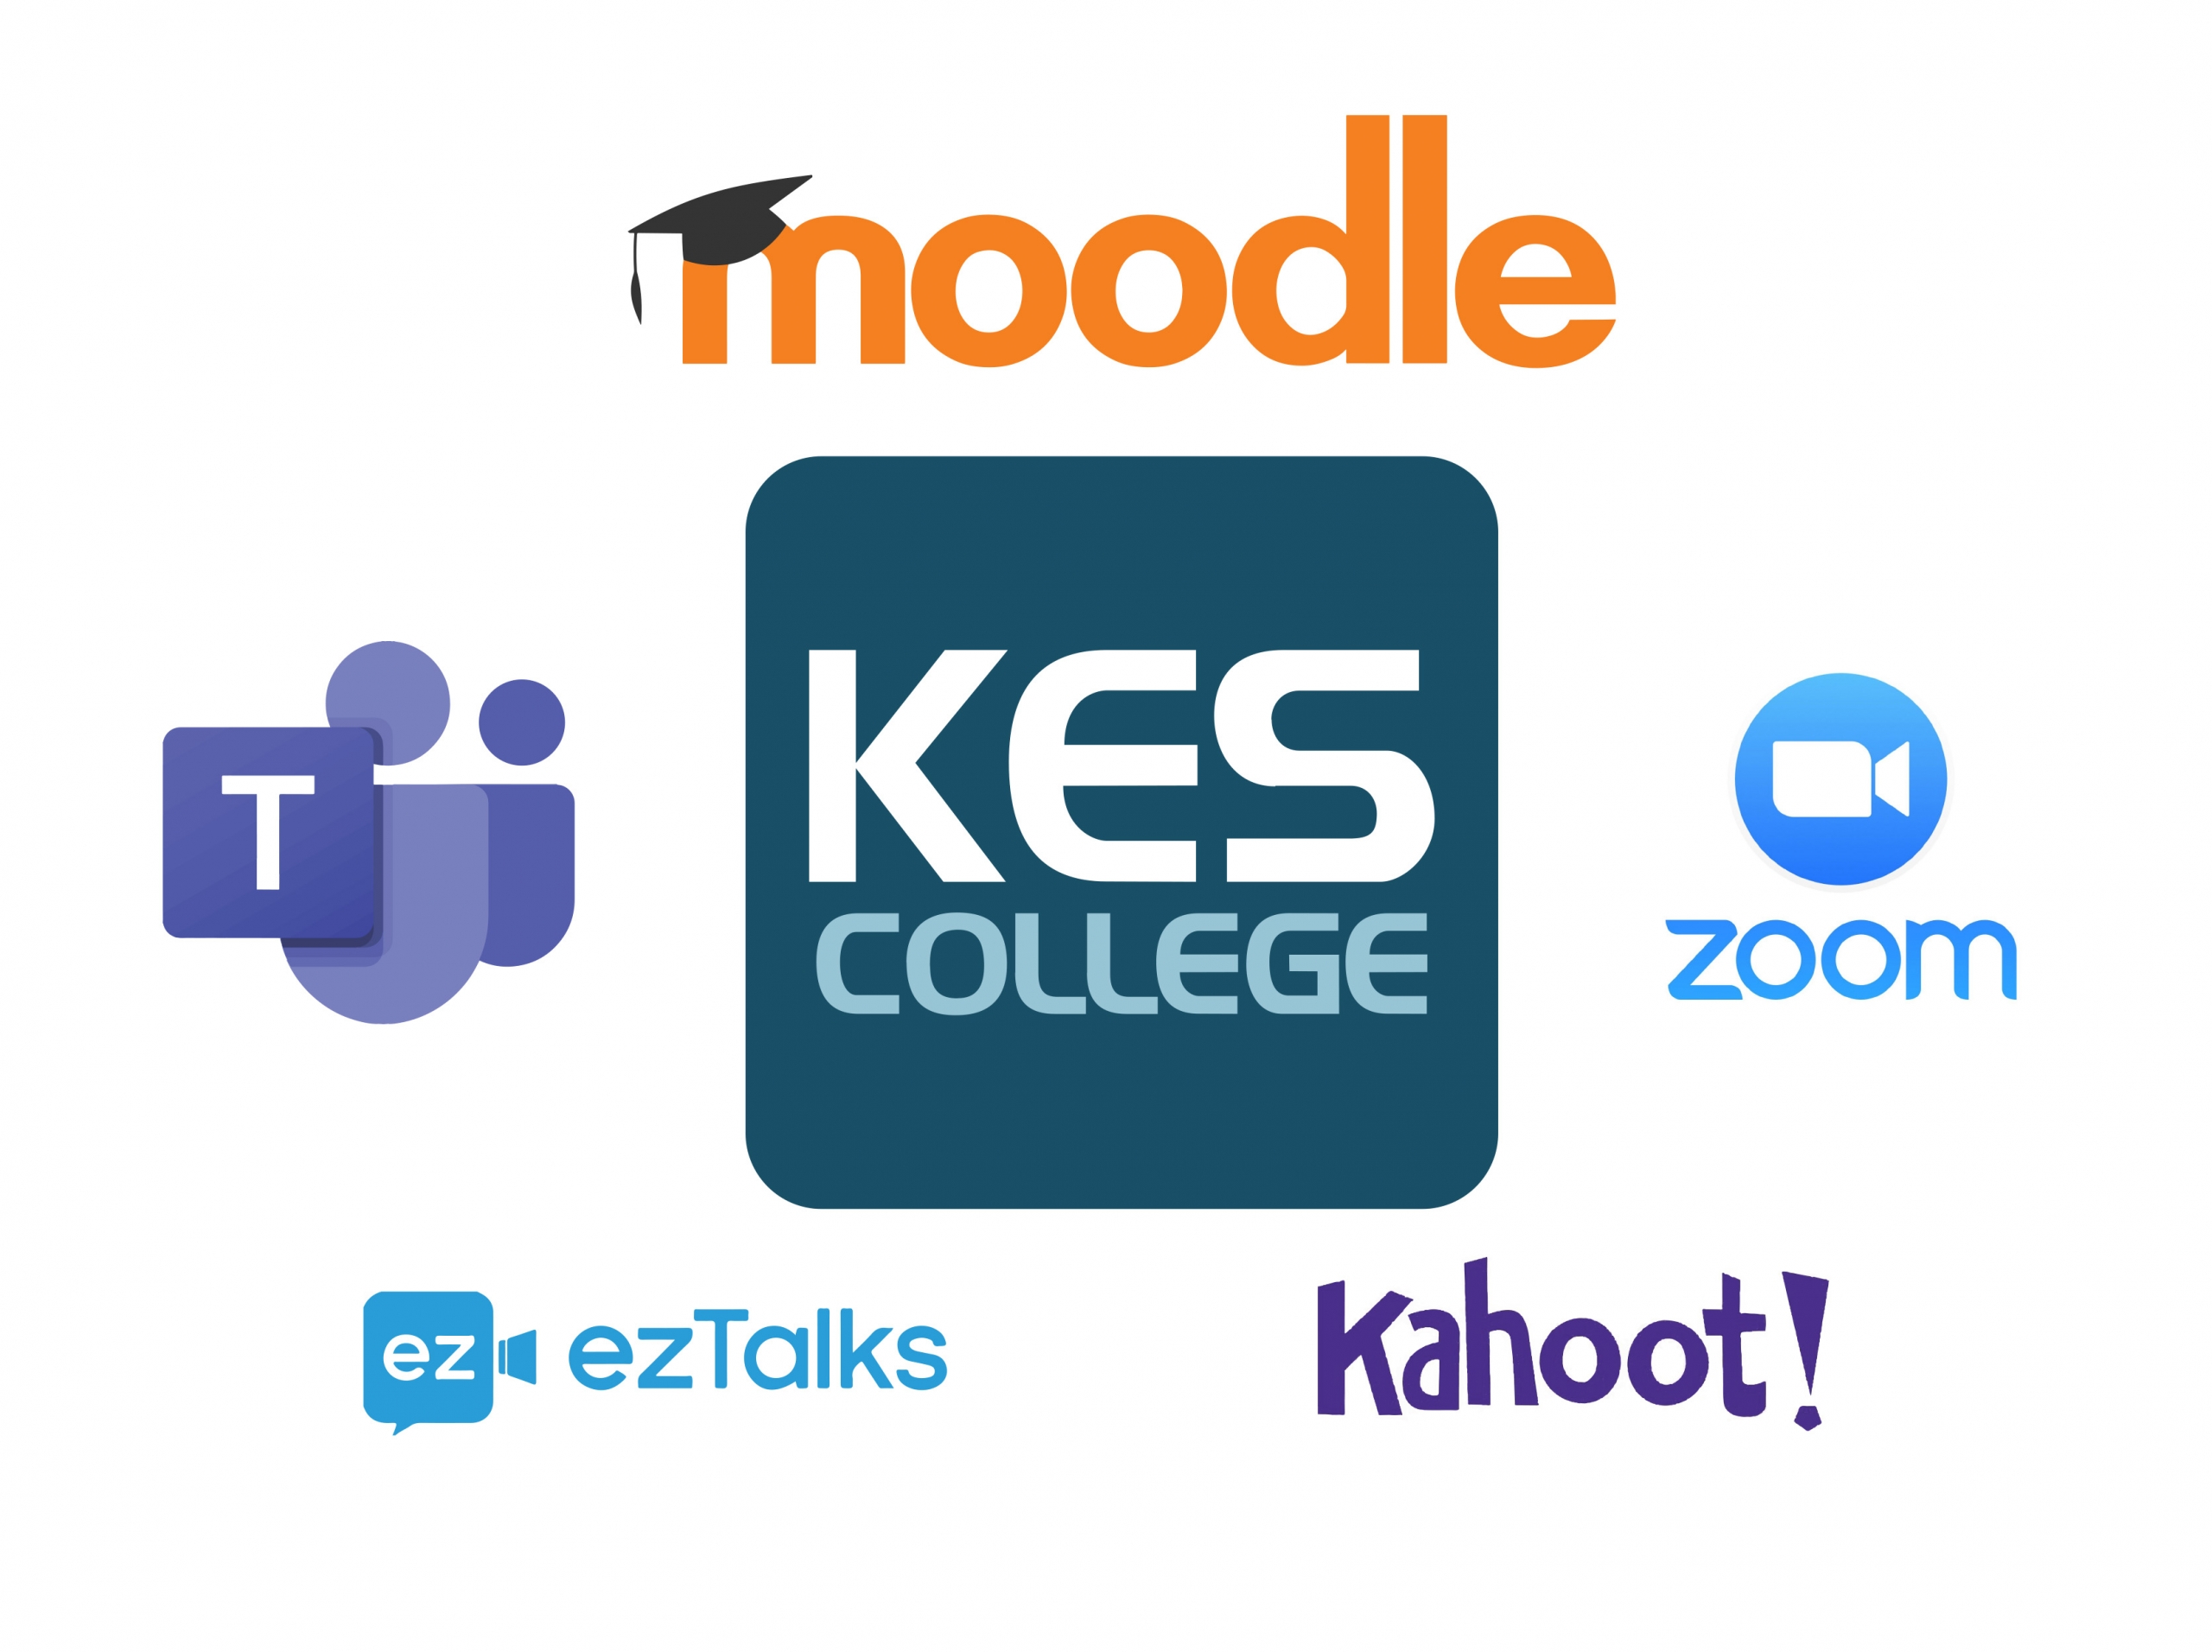 Εκπαίδευση καθηγητών του KES College στην Ηλεκτρονική και Μεικτή μάθηση